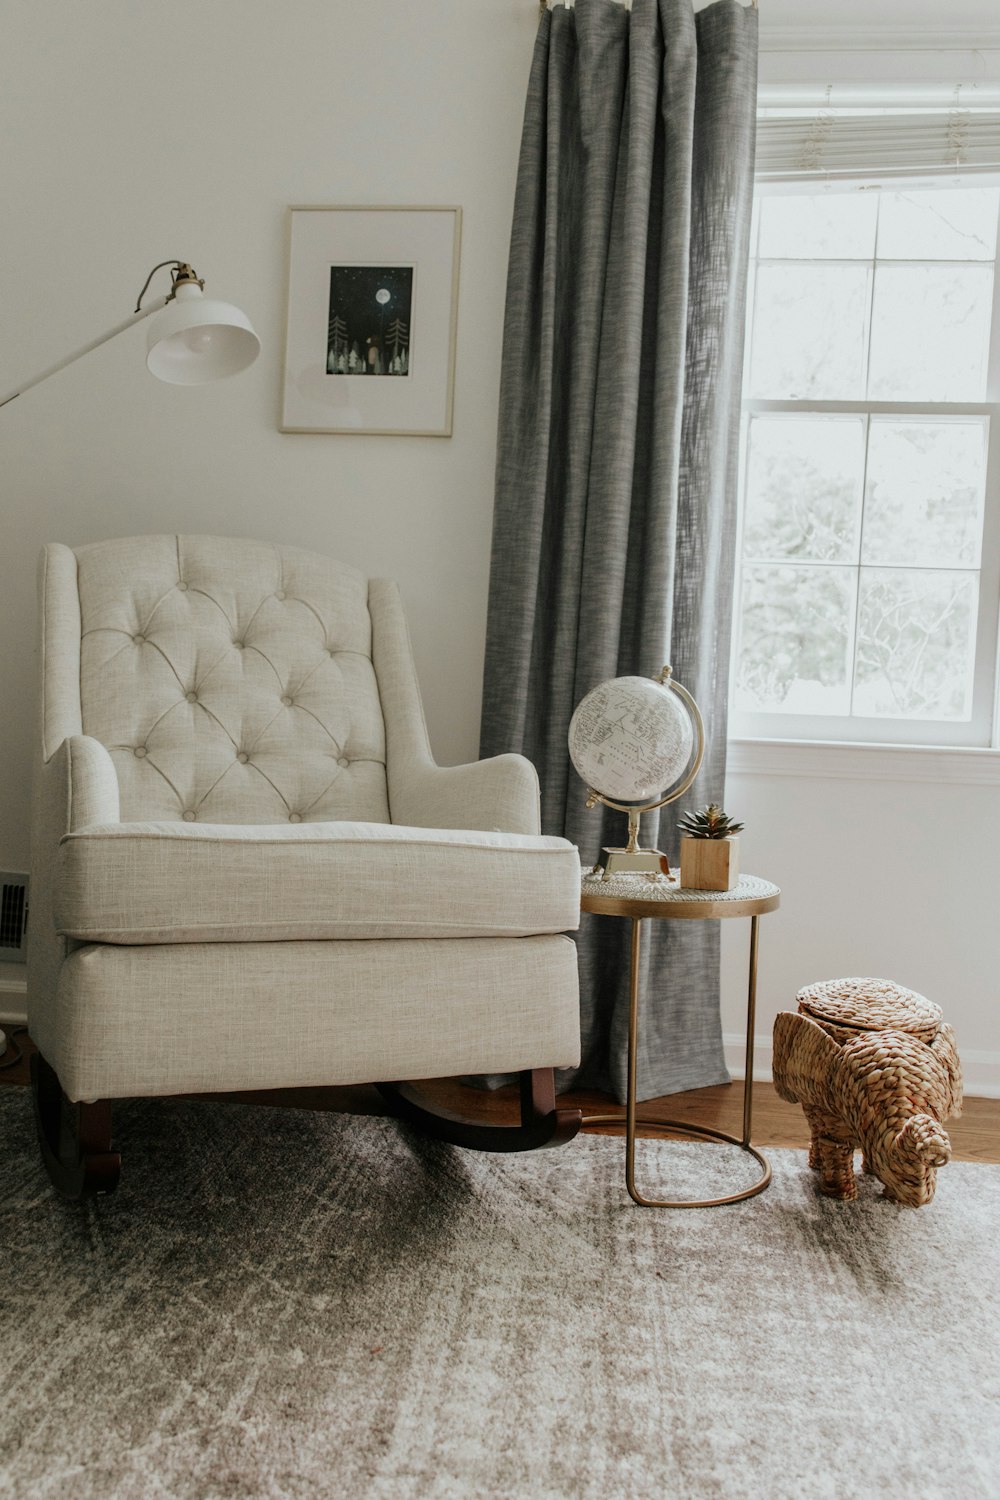 chaise de canapé blanc près du rideau de fenêtre blanc